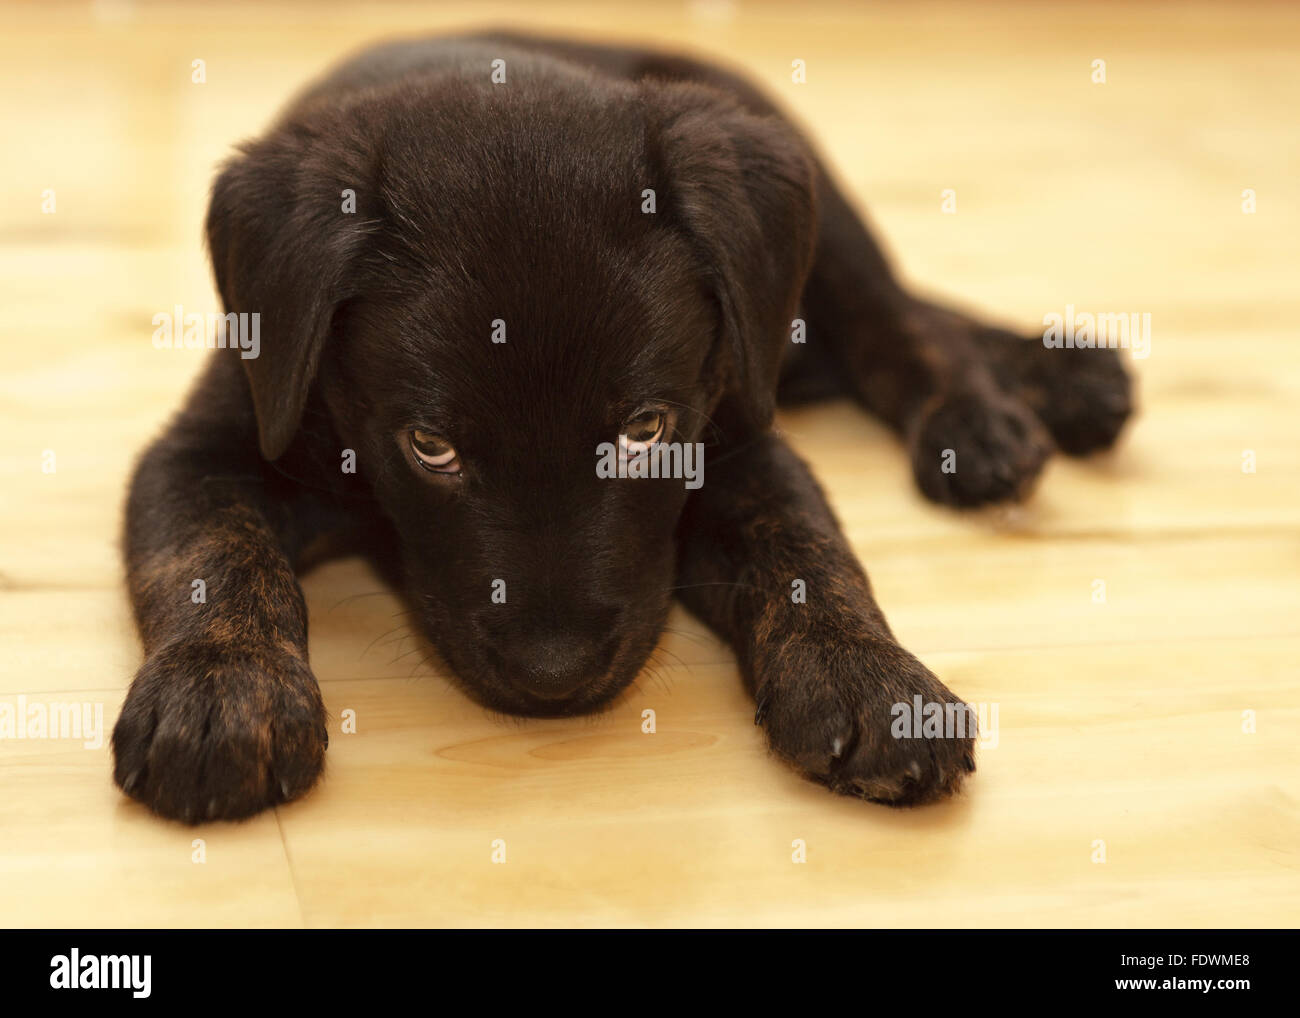 Rottweiler noir Labrador Retriever mixed breed puppy dog modèle libération : N° des biens : oui (chien). Banque D'Images